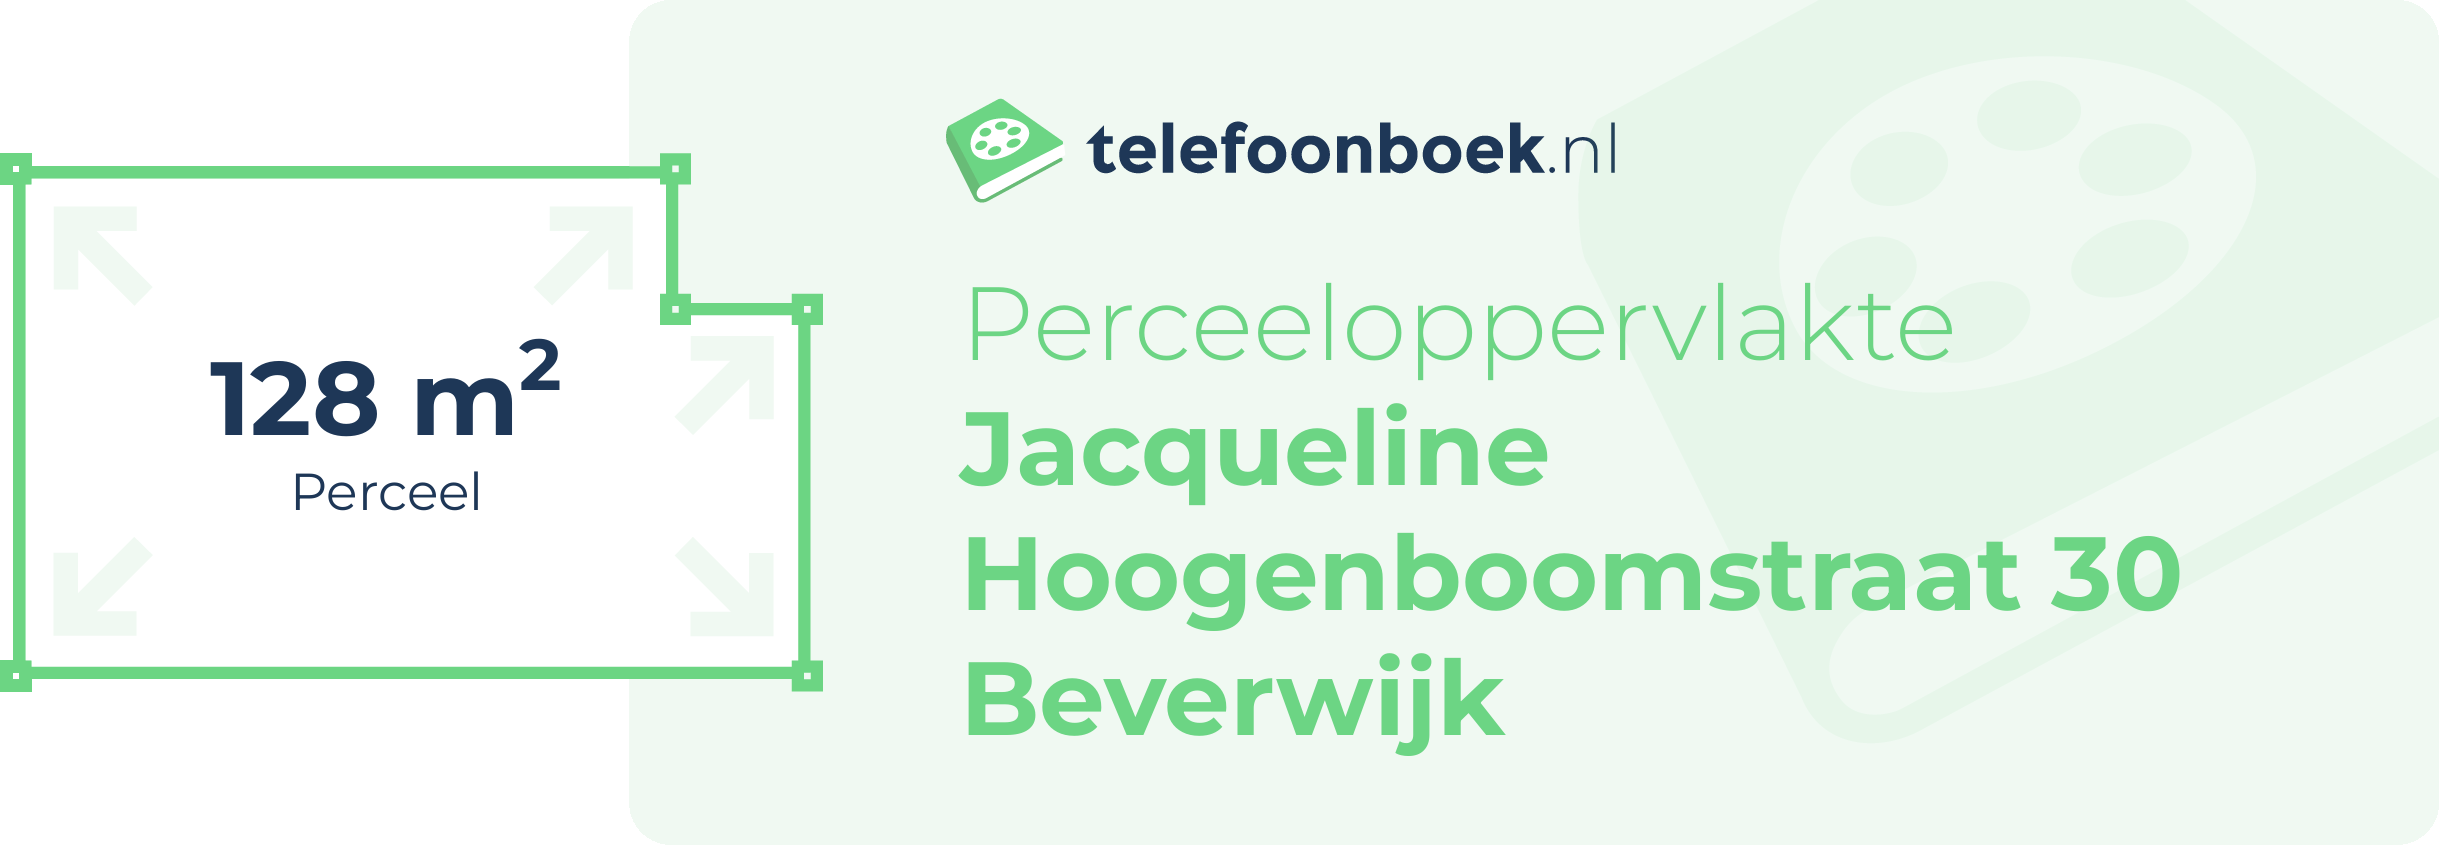 Perceeloppervlakte Jacqueline Hoogenboomstraat 30 Beverwijk